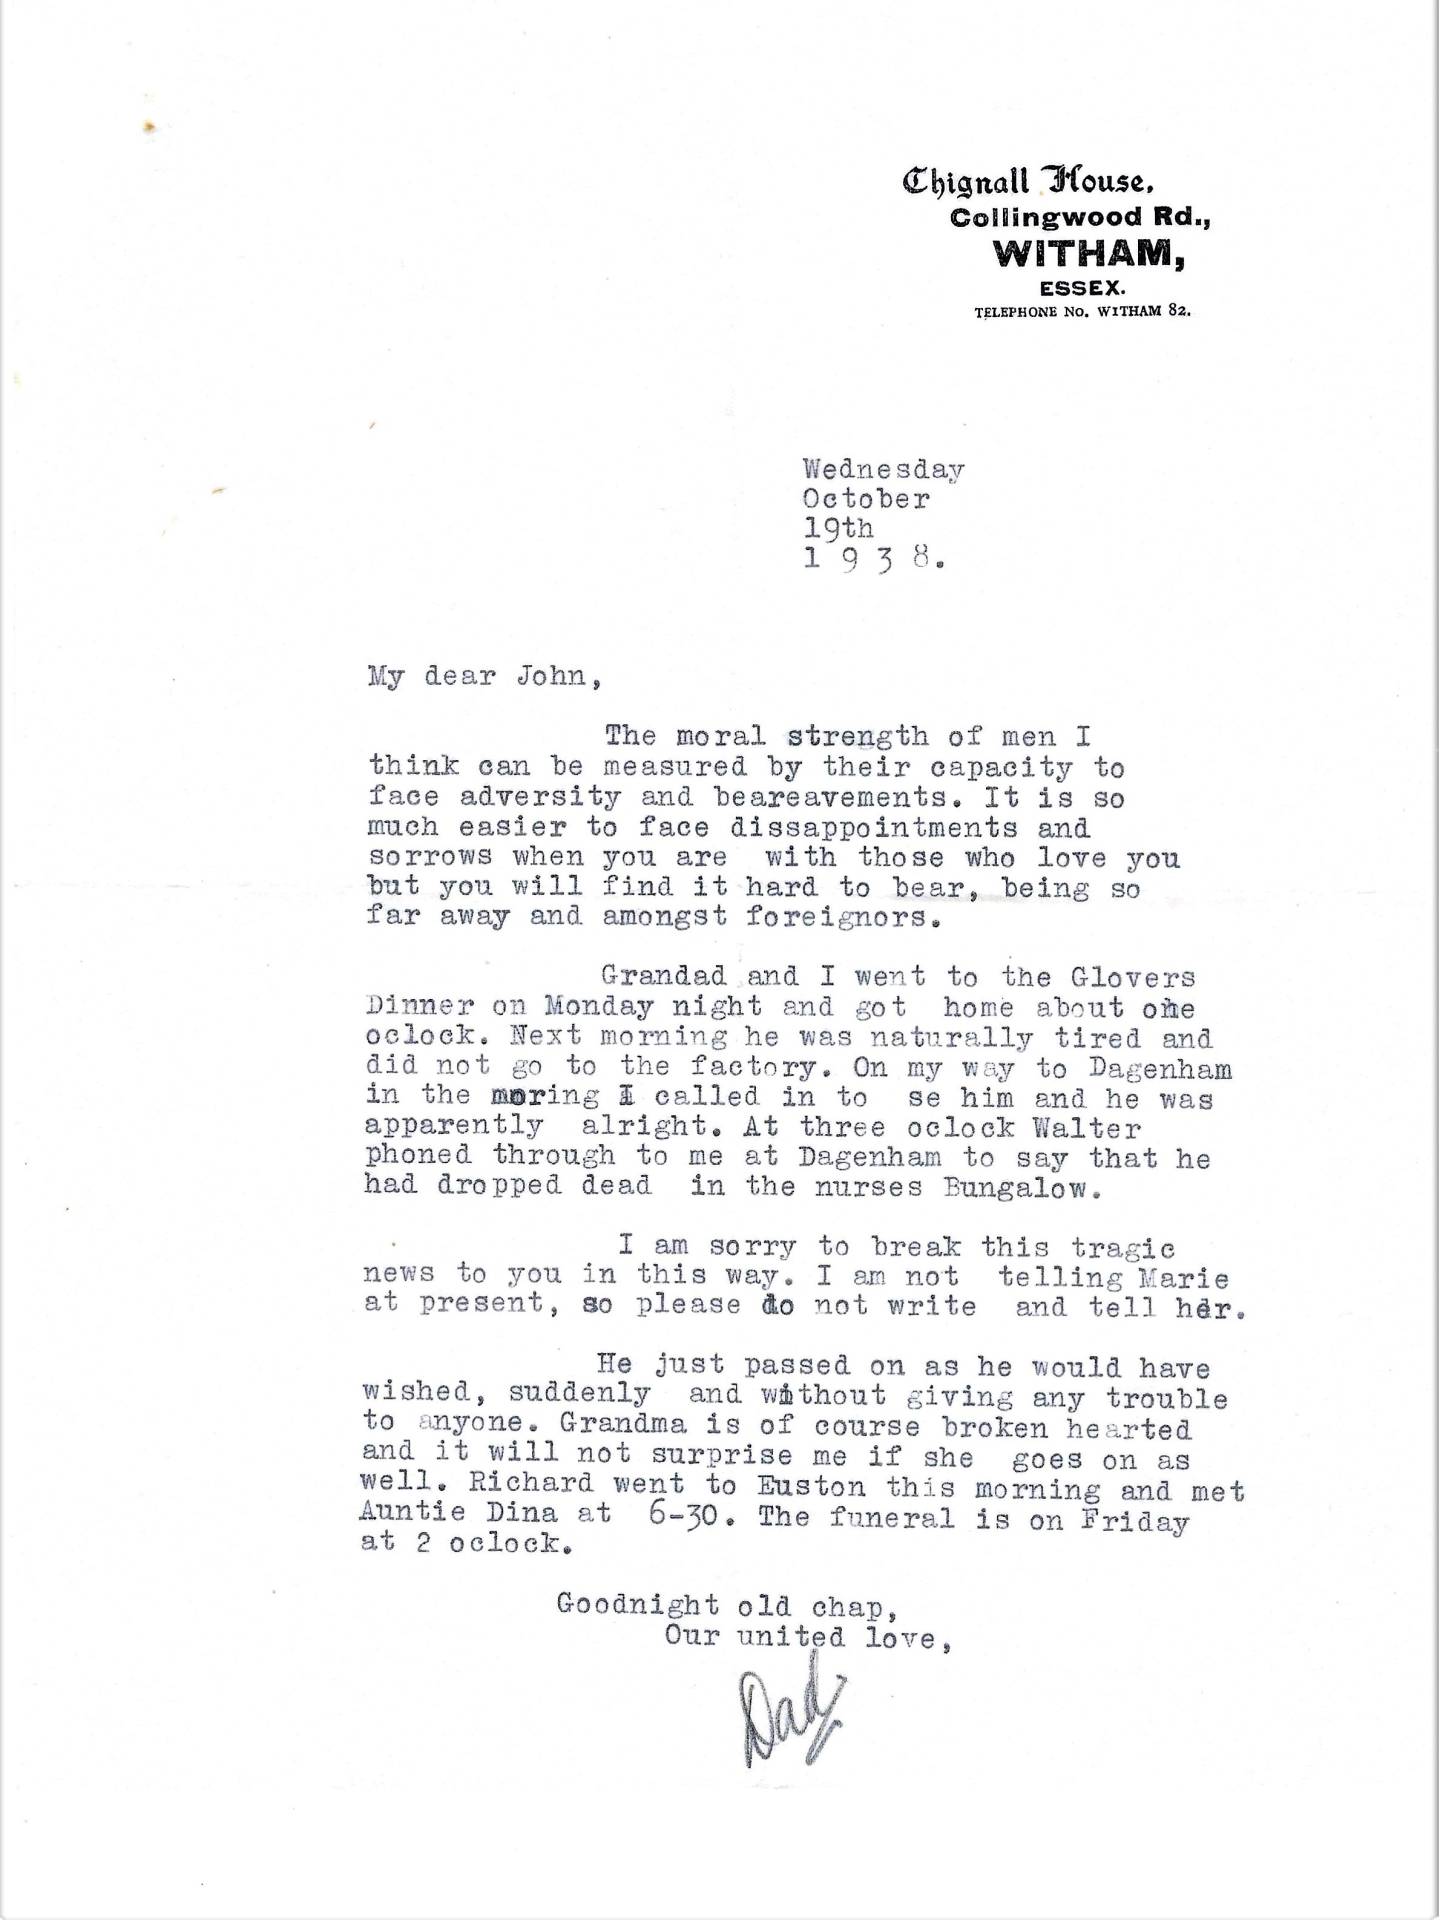 Leslie's letter to John 19th October 1938